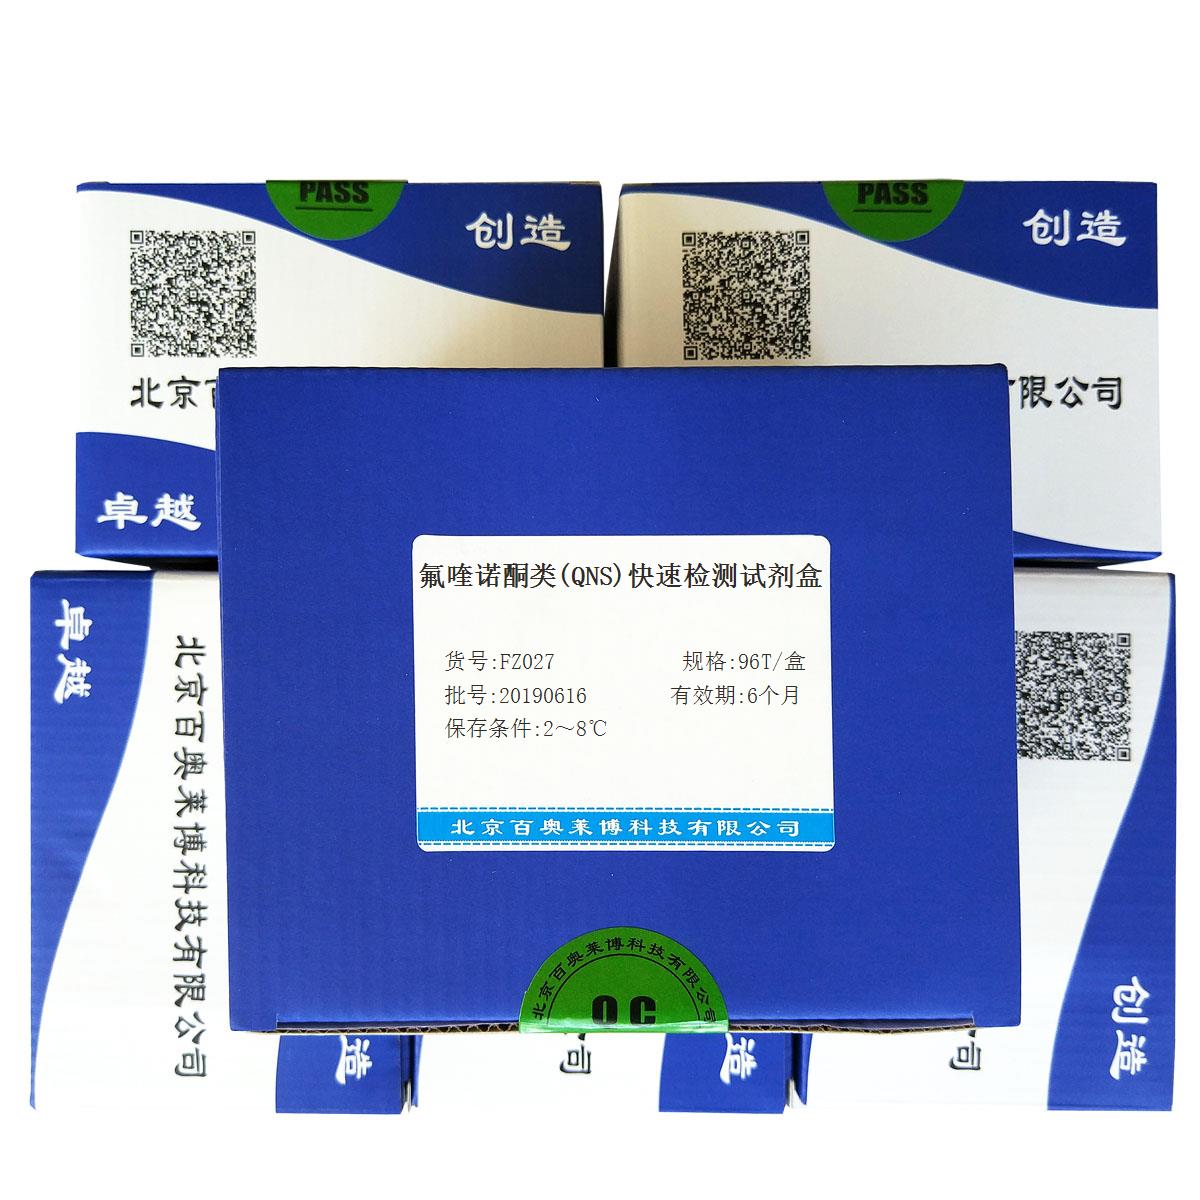 氟喹诺酮类（QNS）快速检测试剂盒优惠促销